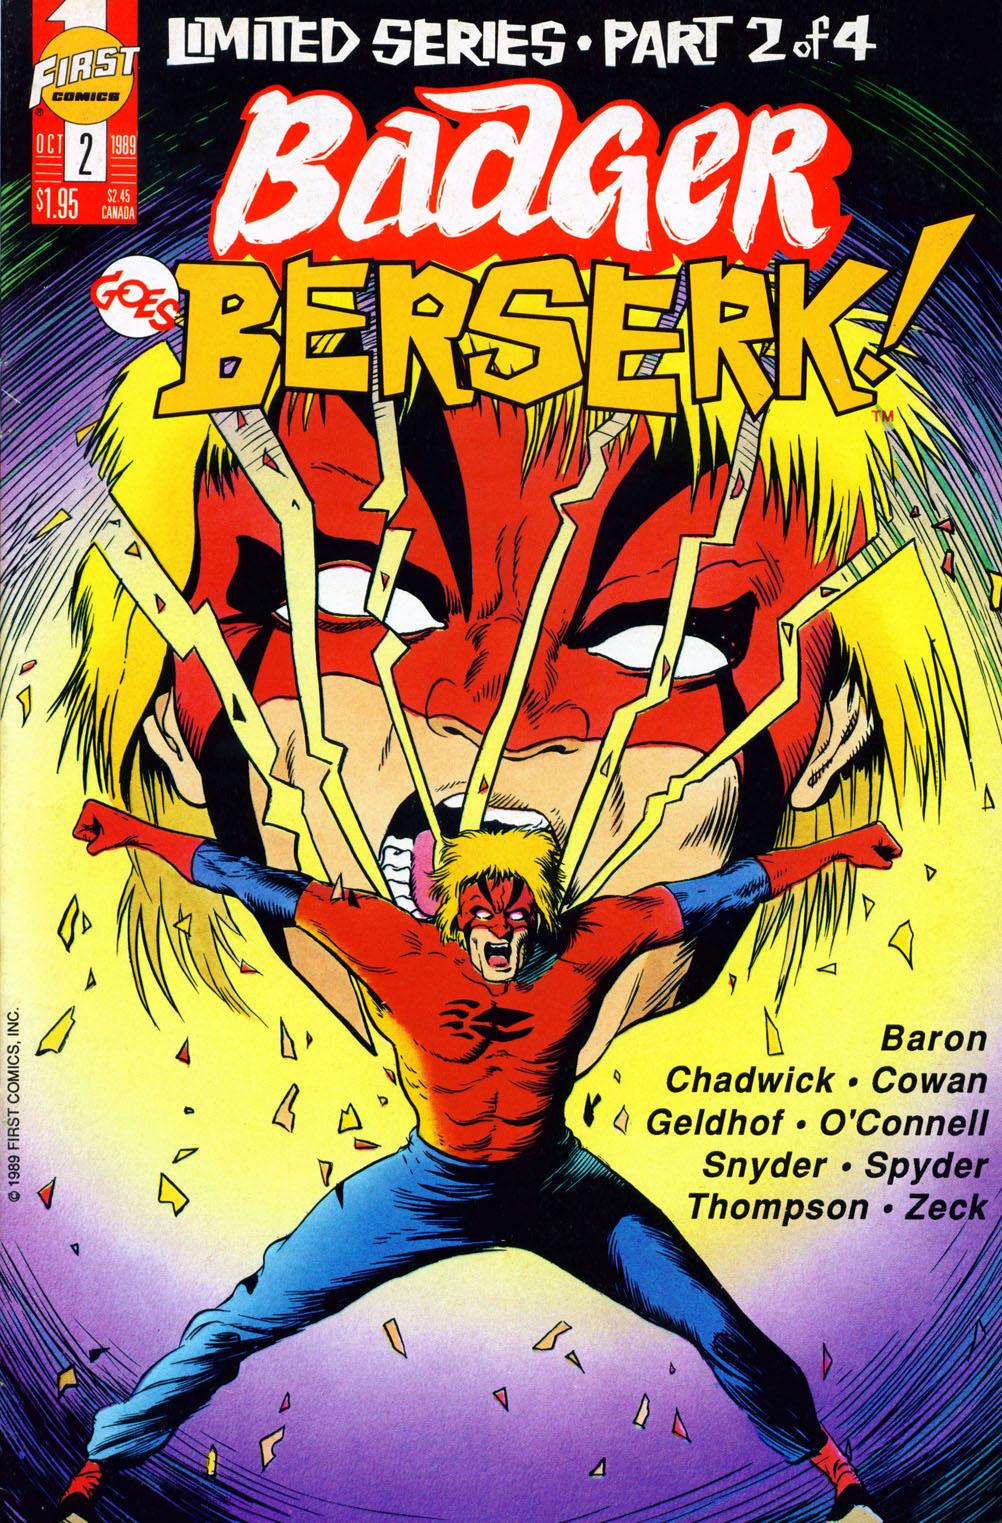 Badger Goes Berserk! issue 2 - Page 1